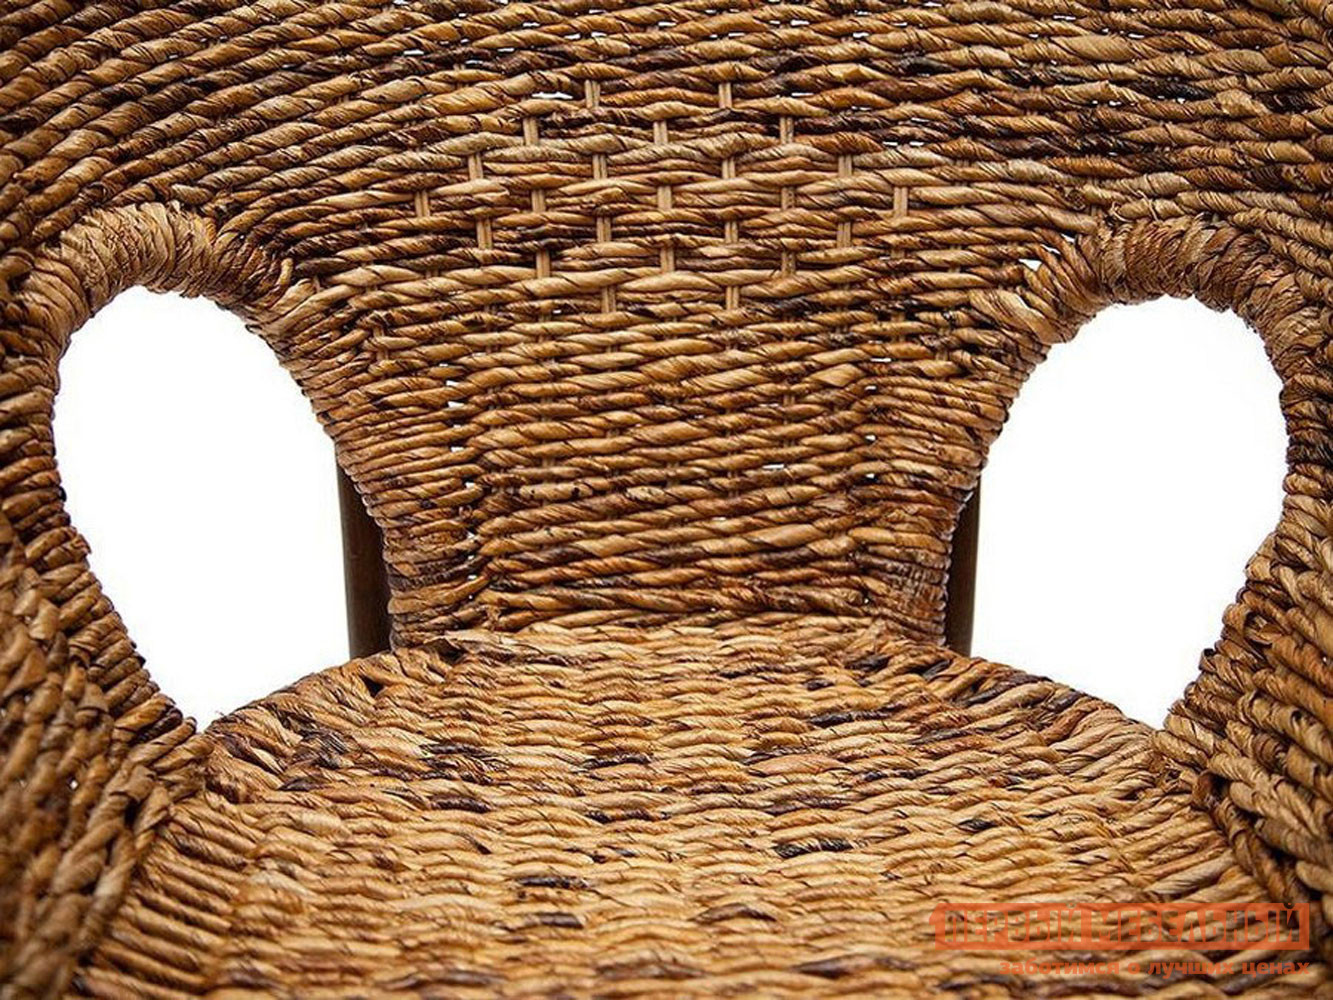 Комплект плетеной мебели  Мандалино 1 Грецкий орех / Банановые листья от Первый Мебельный